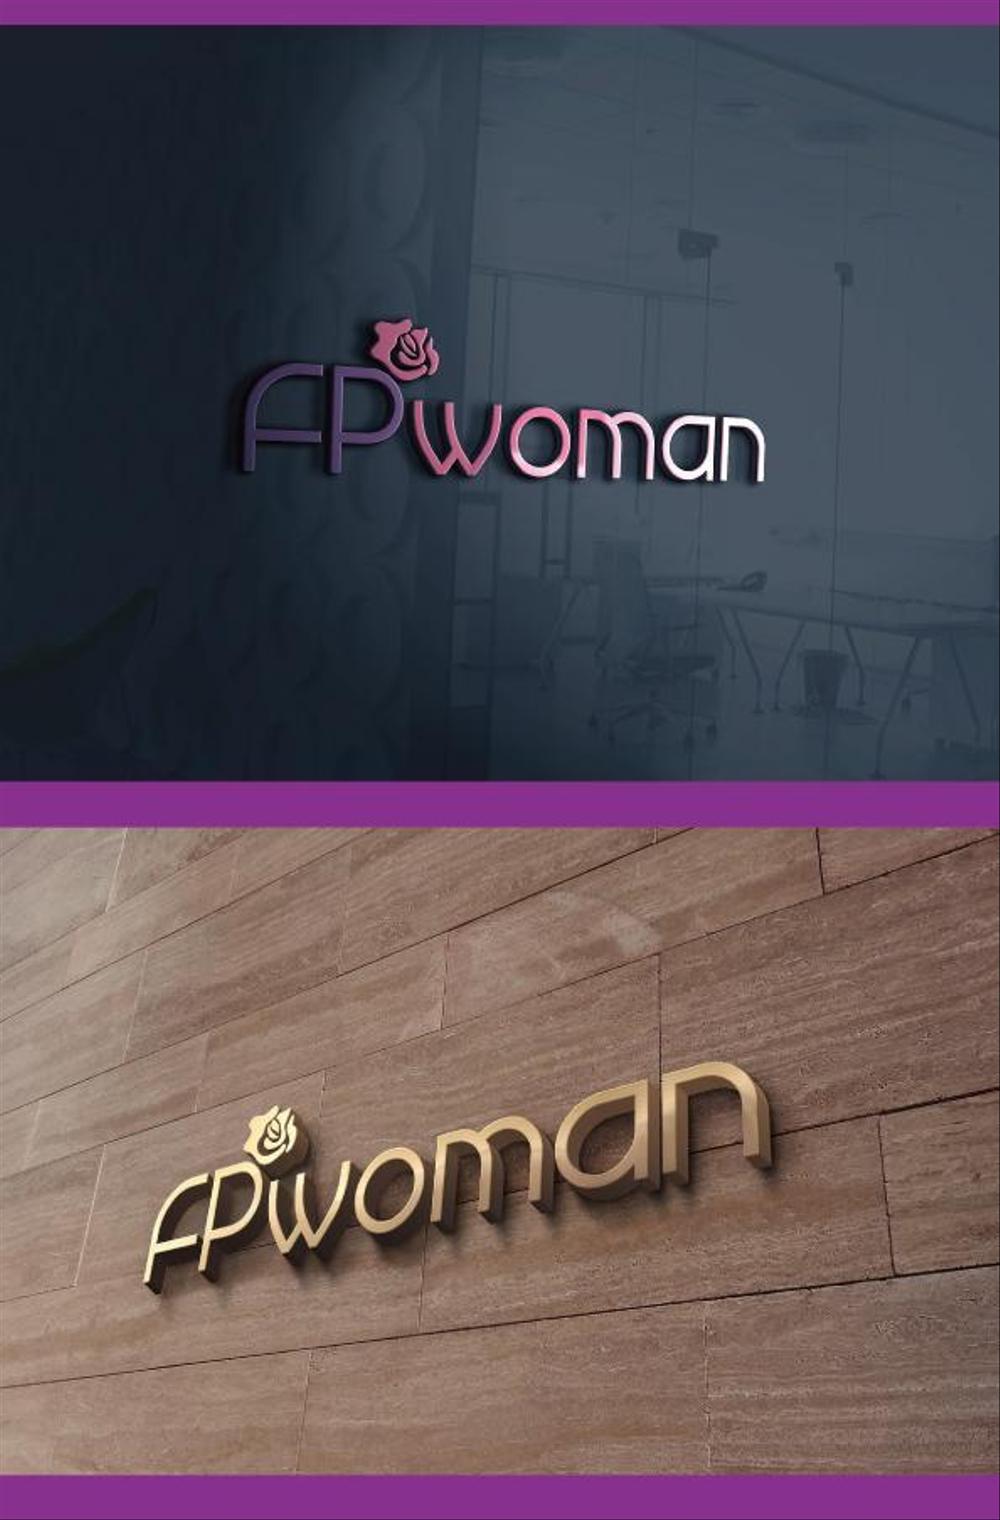 女性のためのファイナンシャルプランニング会社のロゴ製作